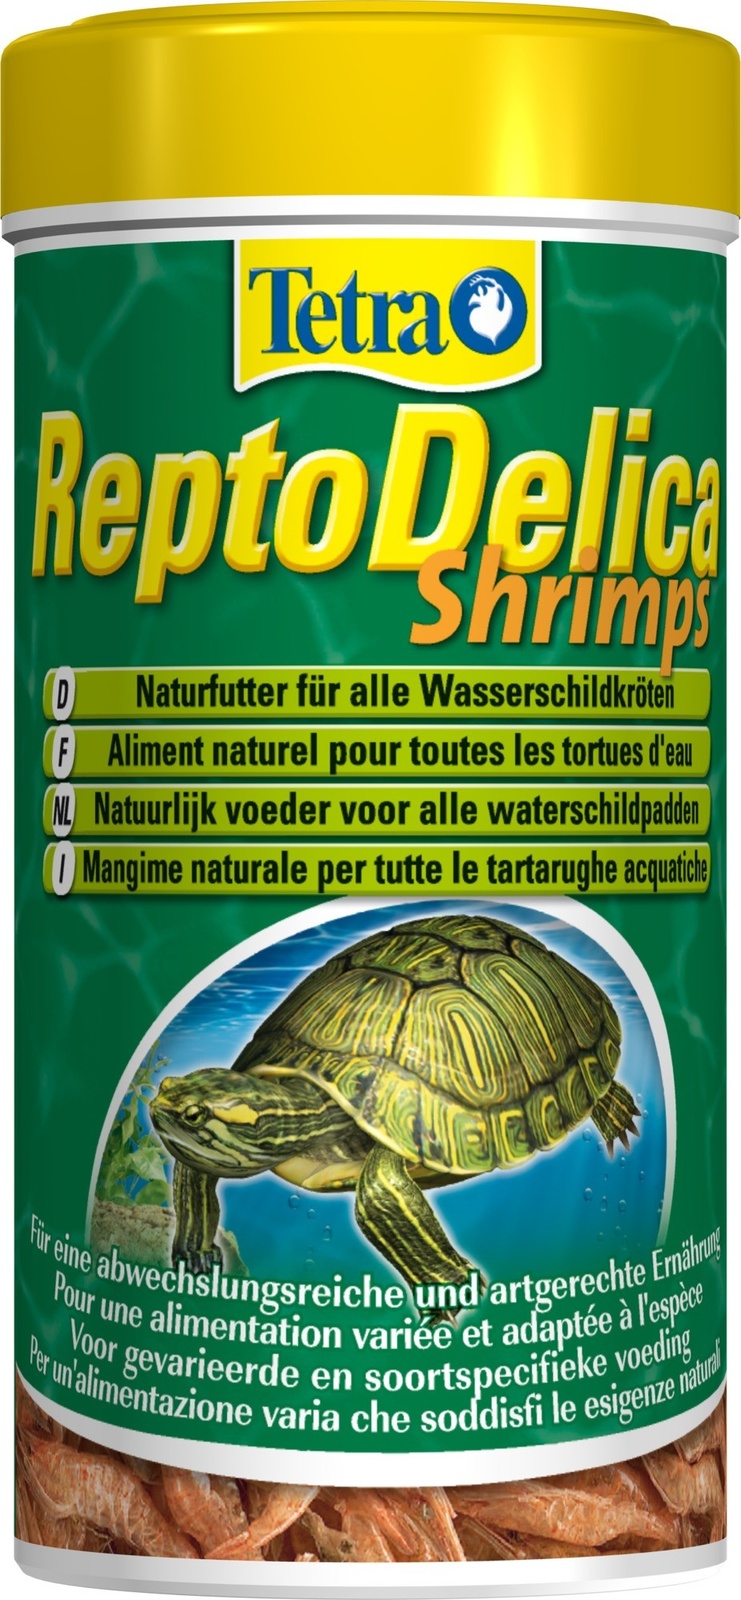 tetra корма tetra корма корм для водных черепах креветки reptodelica shrimps 20 г Tetra (корма) Tetra (корма) корм для водных черепах. креветки ReptoDelica Shrimps (20 г)